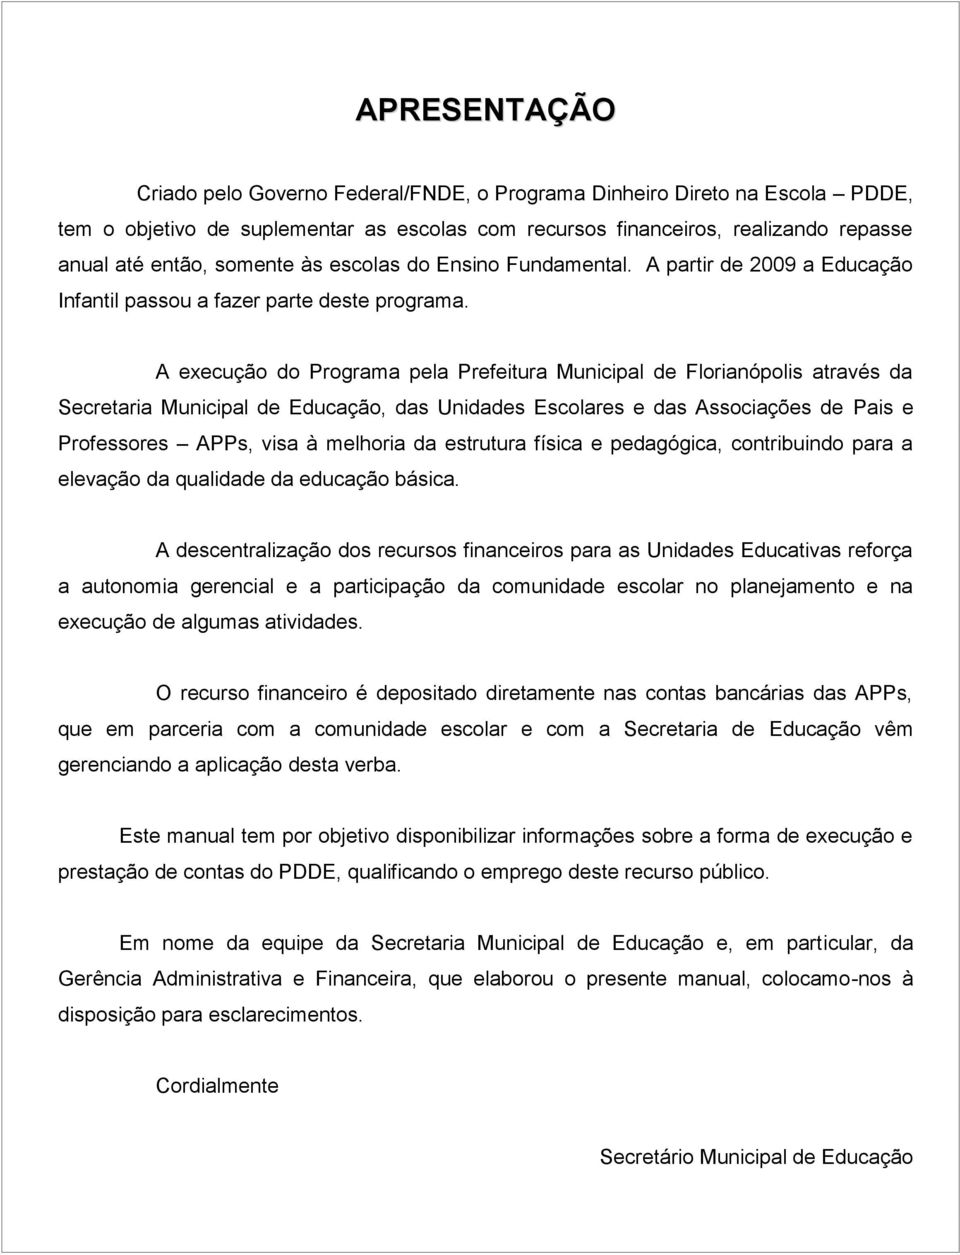 A execução do Programa pela Prefeitura Municipal de Florianópolis através da Secretaria Municipal de Educação, das Unidades Escolares e das Associações de Pais e Professores APPs, visa à melhoria da